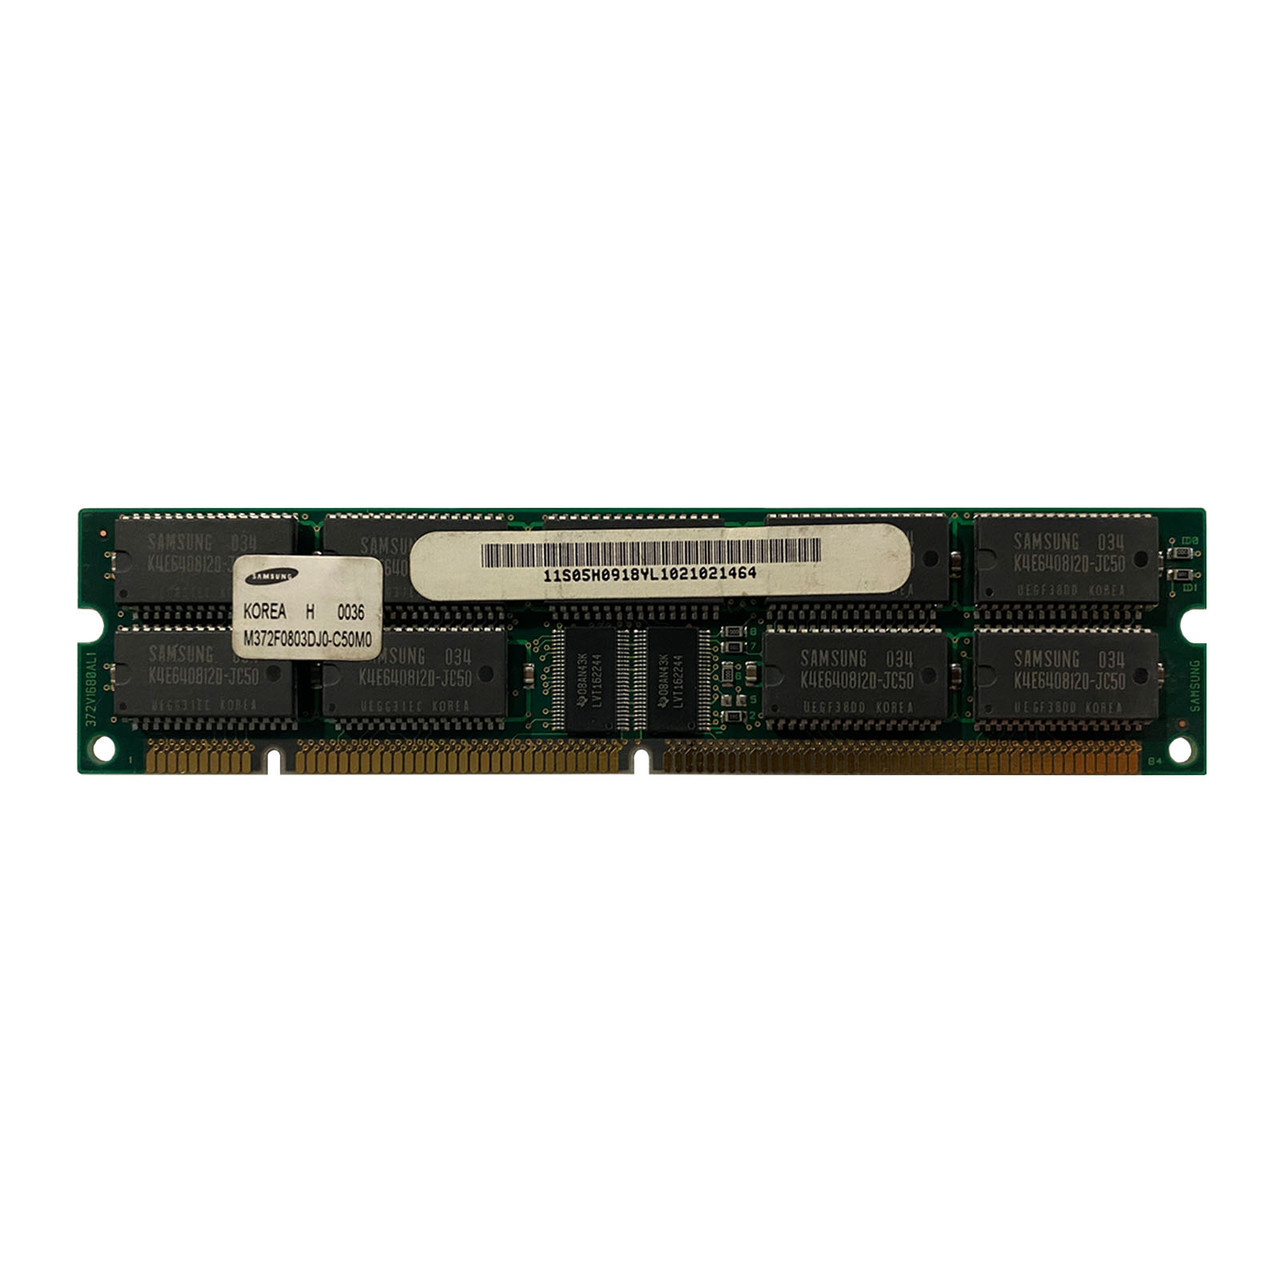 IBM 05H0918 32MB ECC Memory Module